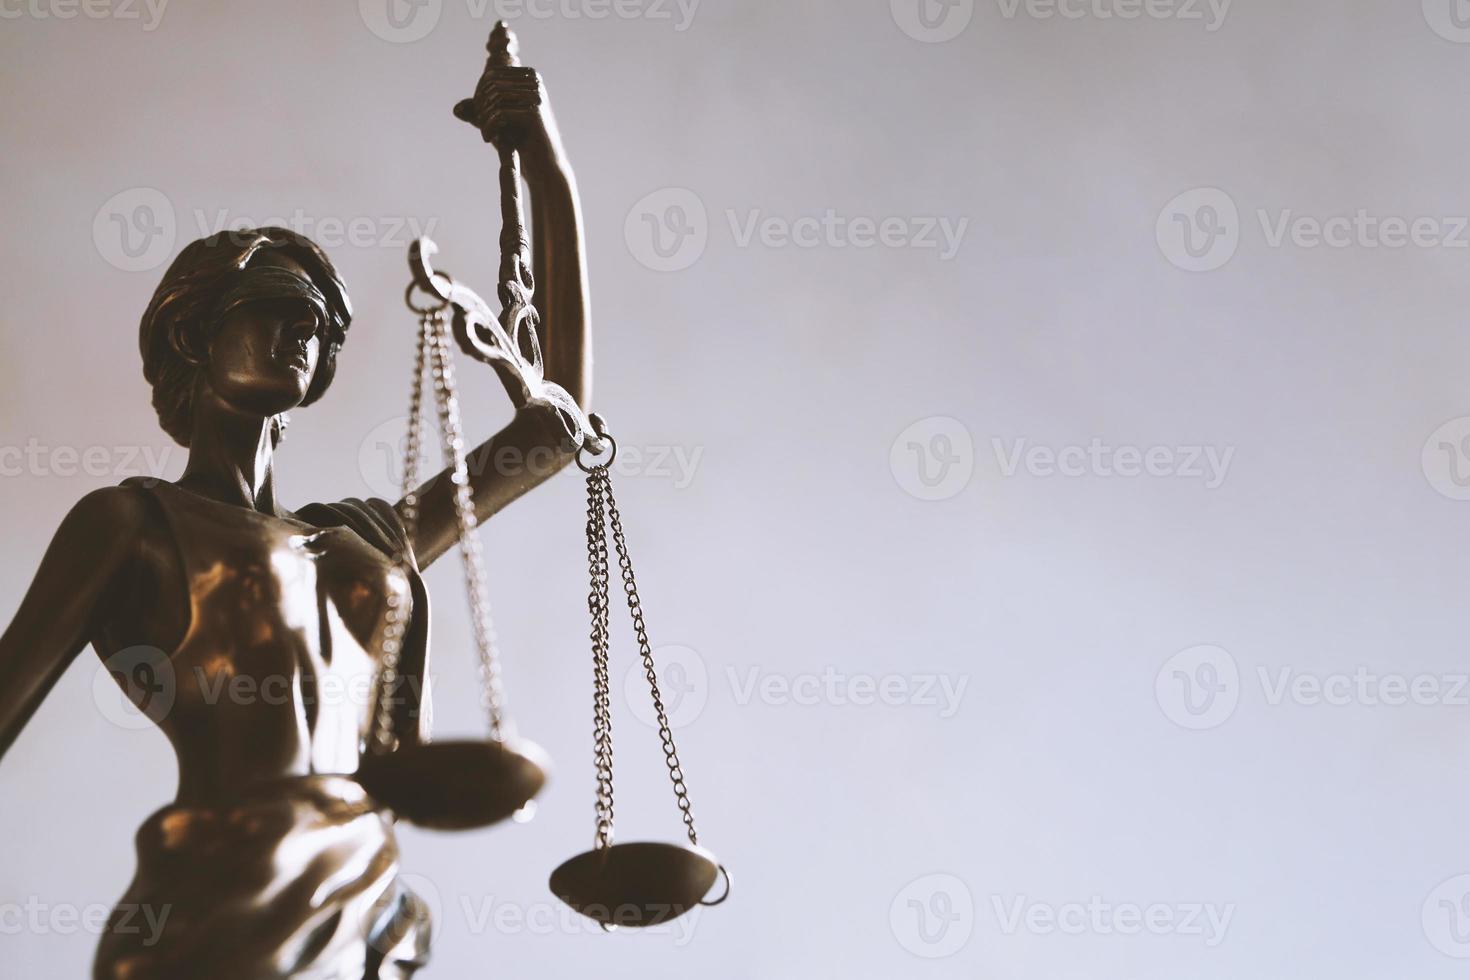 figurine de dame justice ou justitia - symbole de la loi et de la jurisprudence photo